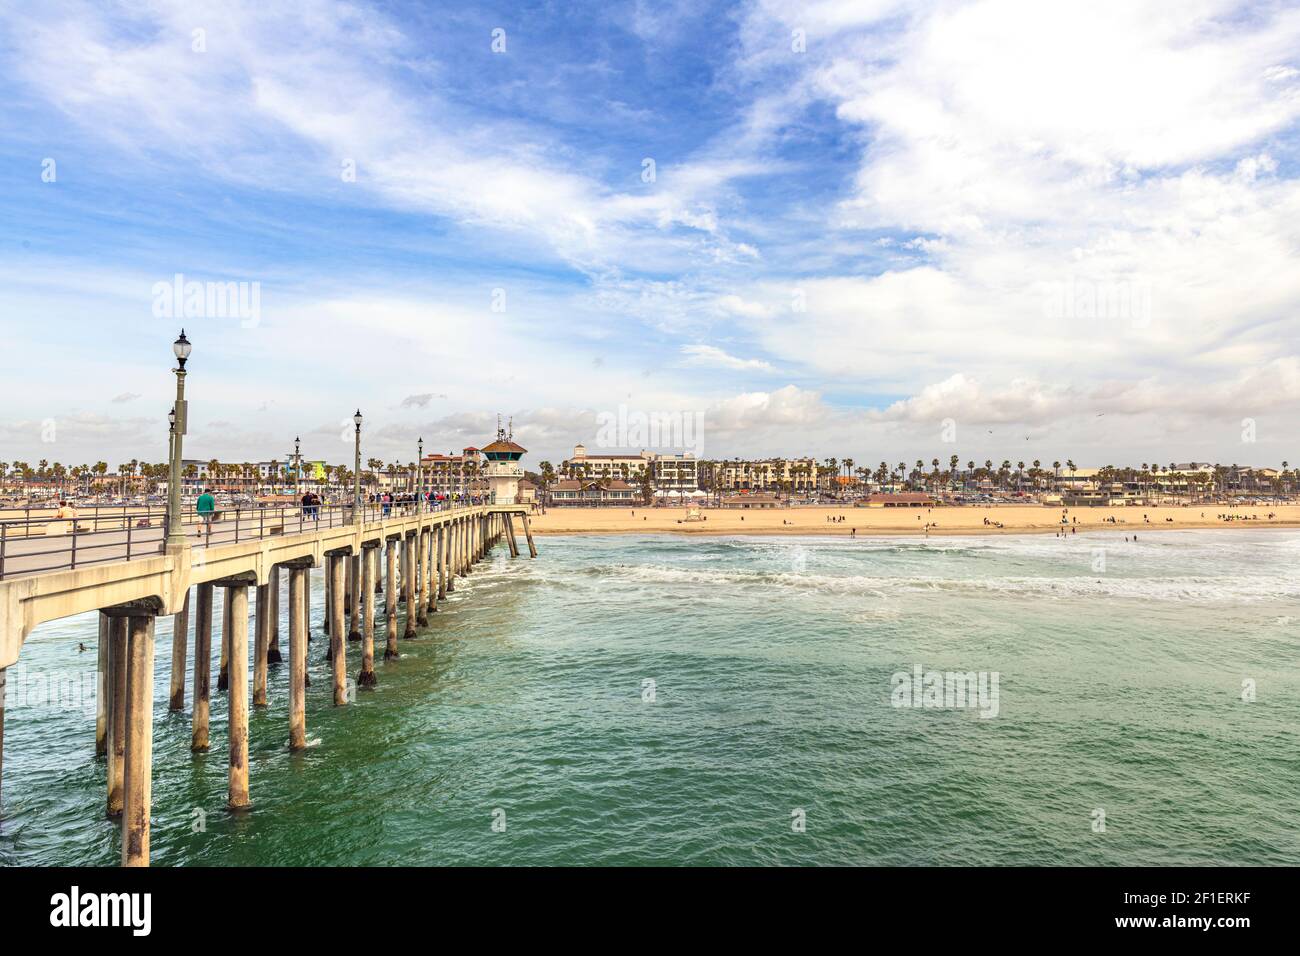 L'iconico molo di Huntington Beach ospita milioni di turisti ogni anno. I panorami sono semplicemente belli, specialmente durante le vivaci giornate di sole. Foto Stock